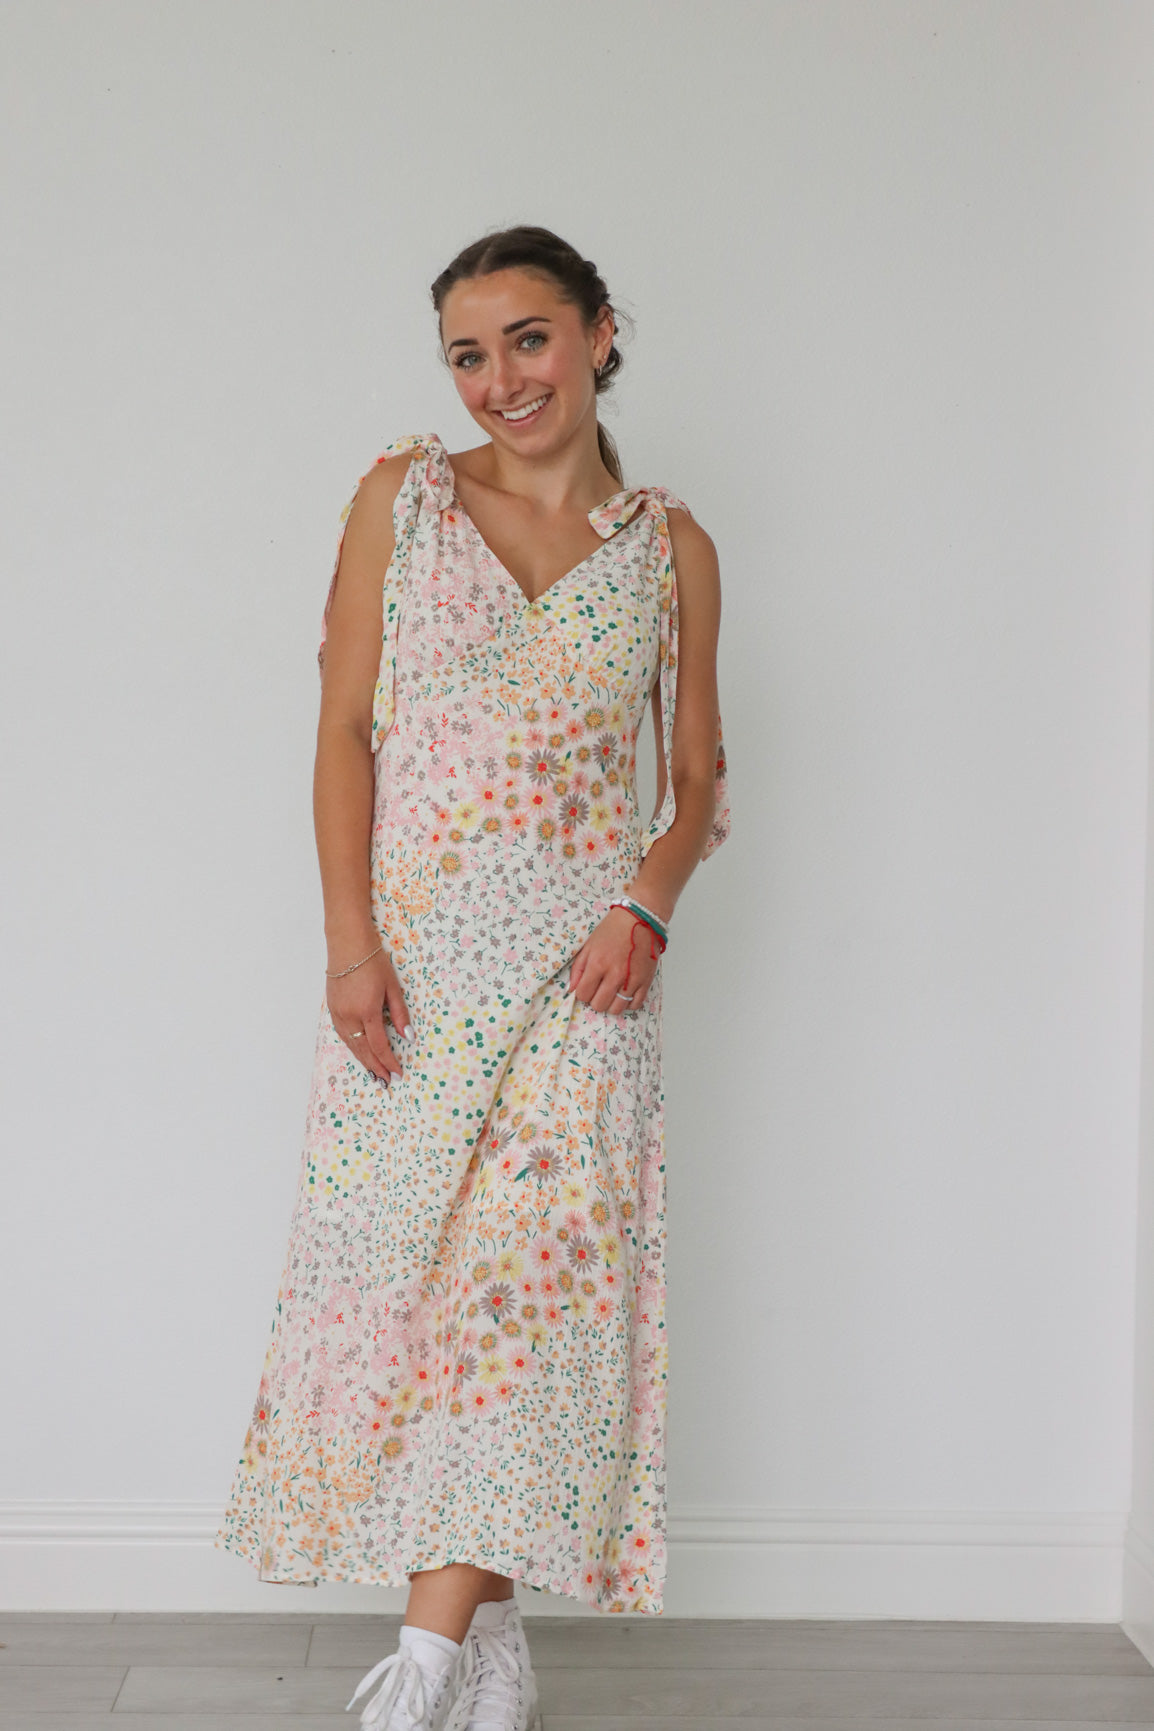 girl wearing pastel floral long dress